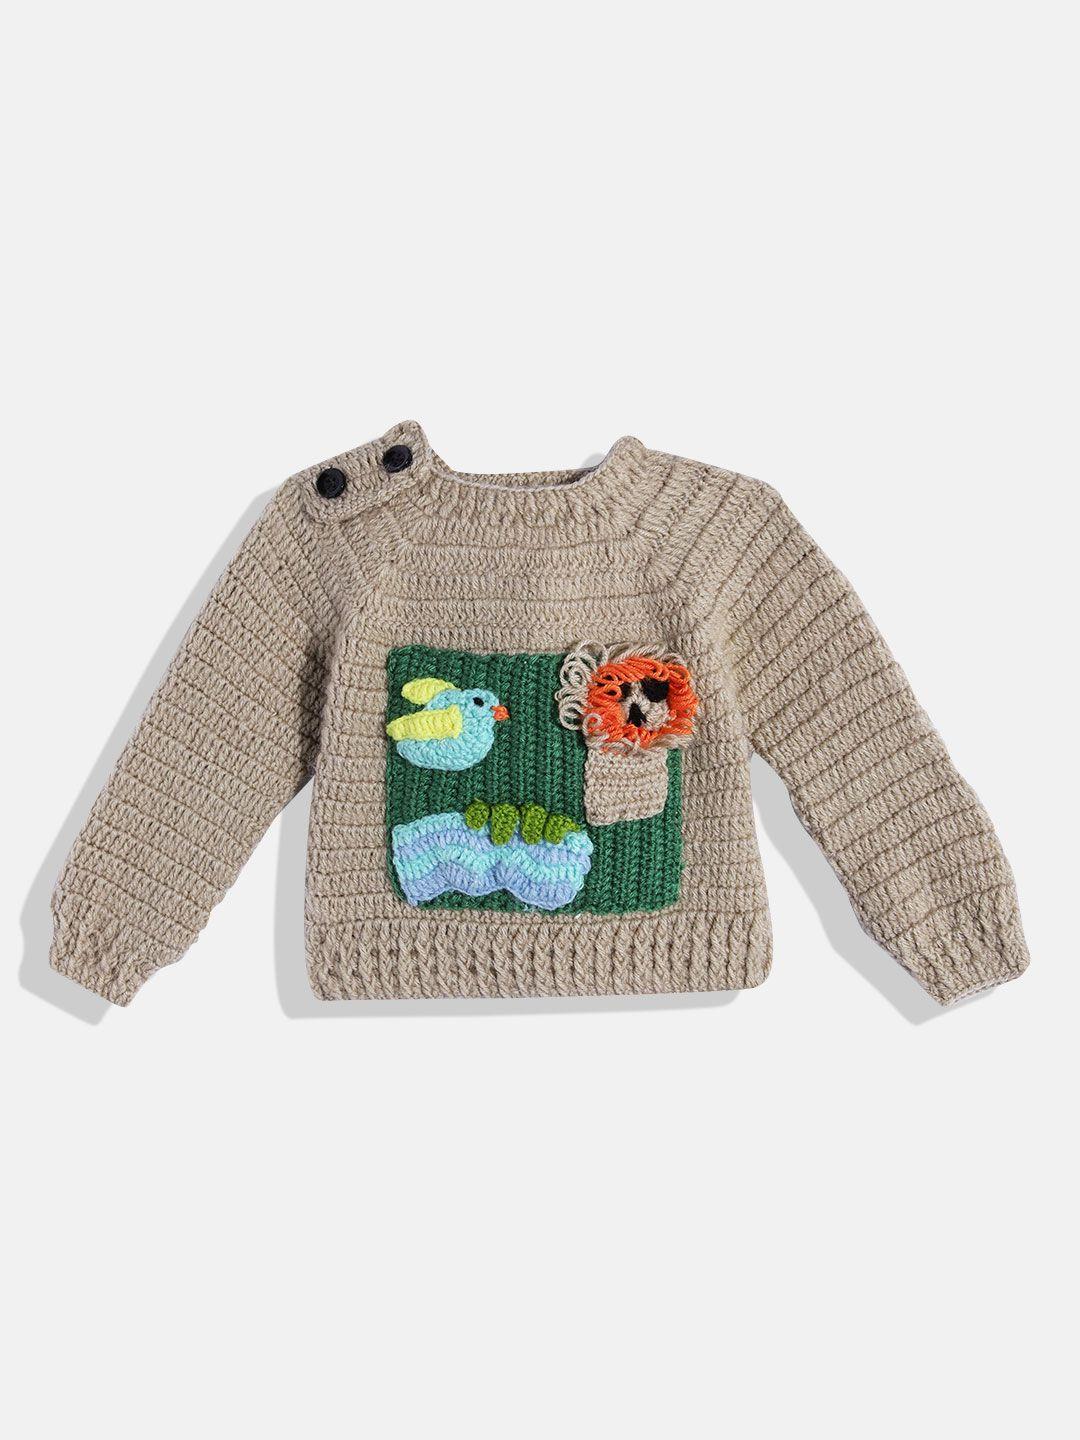 chutput kids embroidered woollen sweater vest